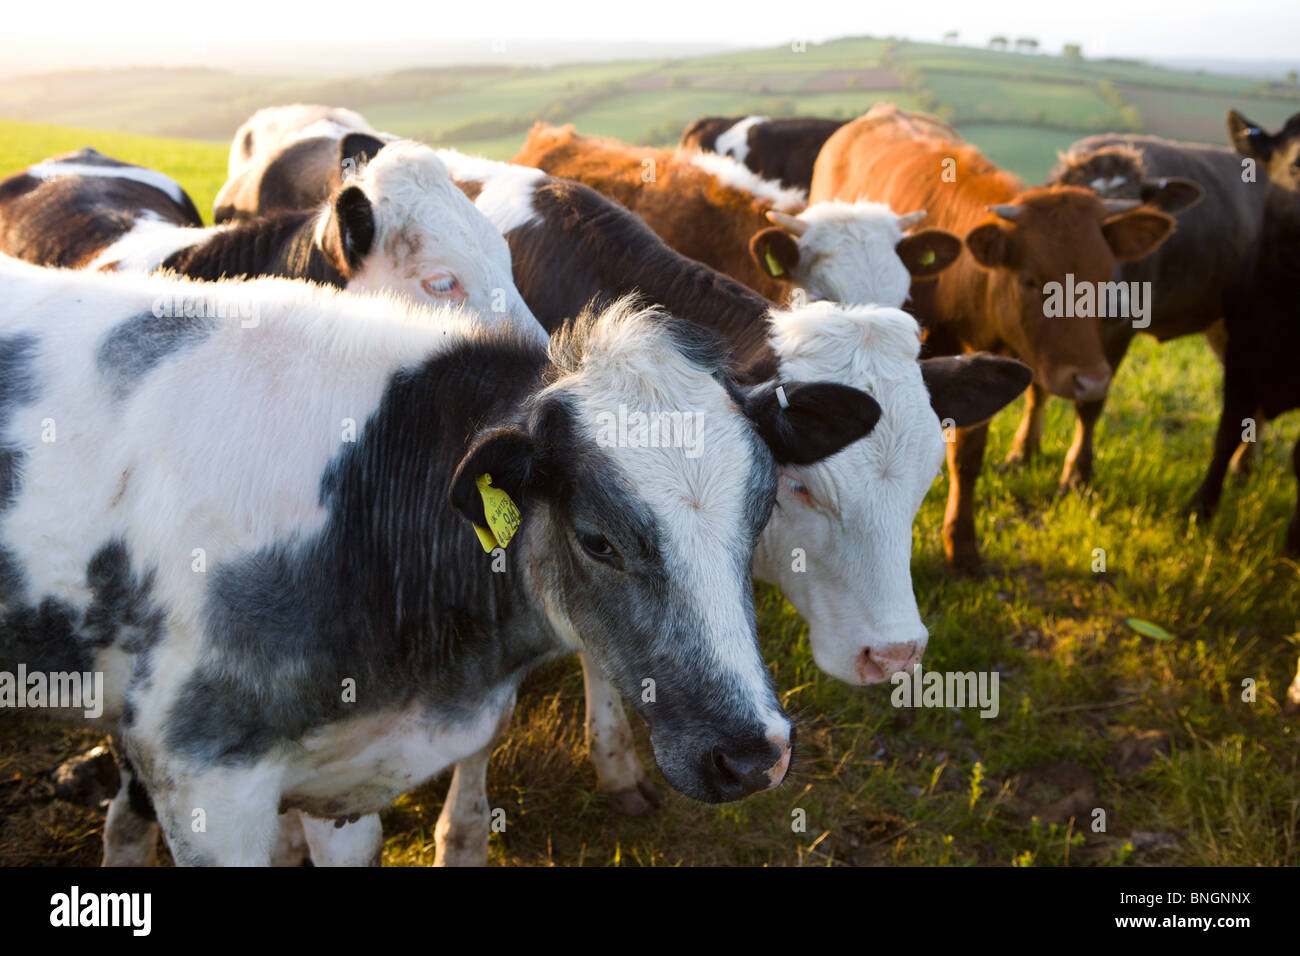 Curieux taureaux foule ensemble dans un champ les agriculteurs, Devon, Angleterre. Printemps (mai) 2009 Banque D'Images